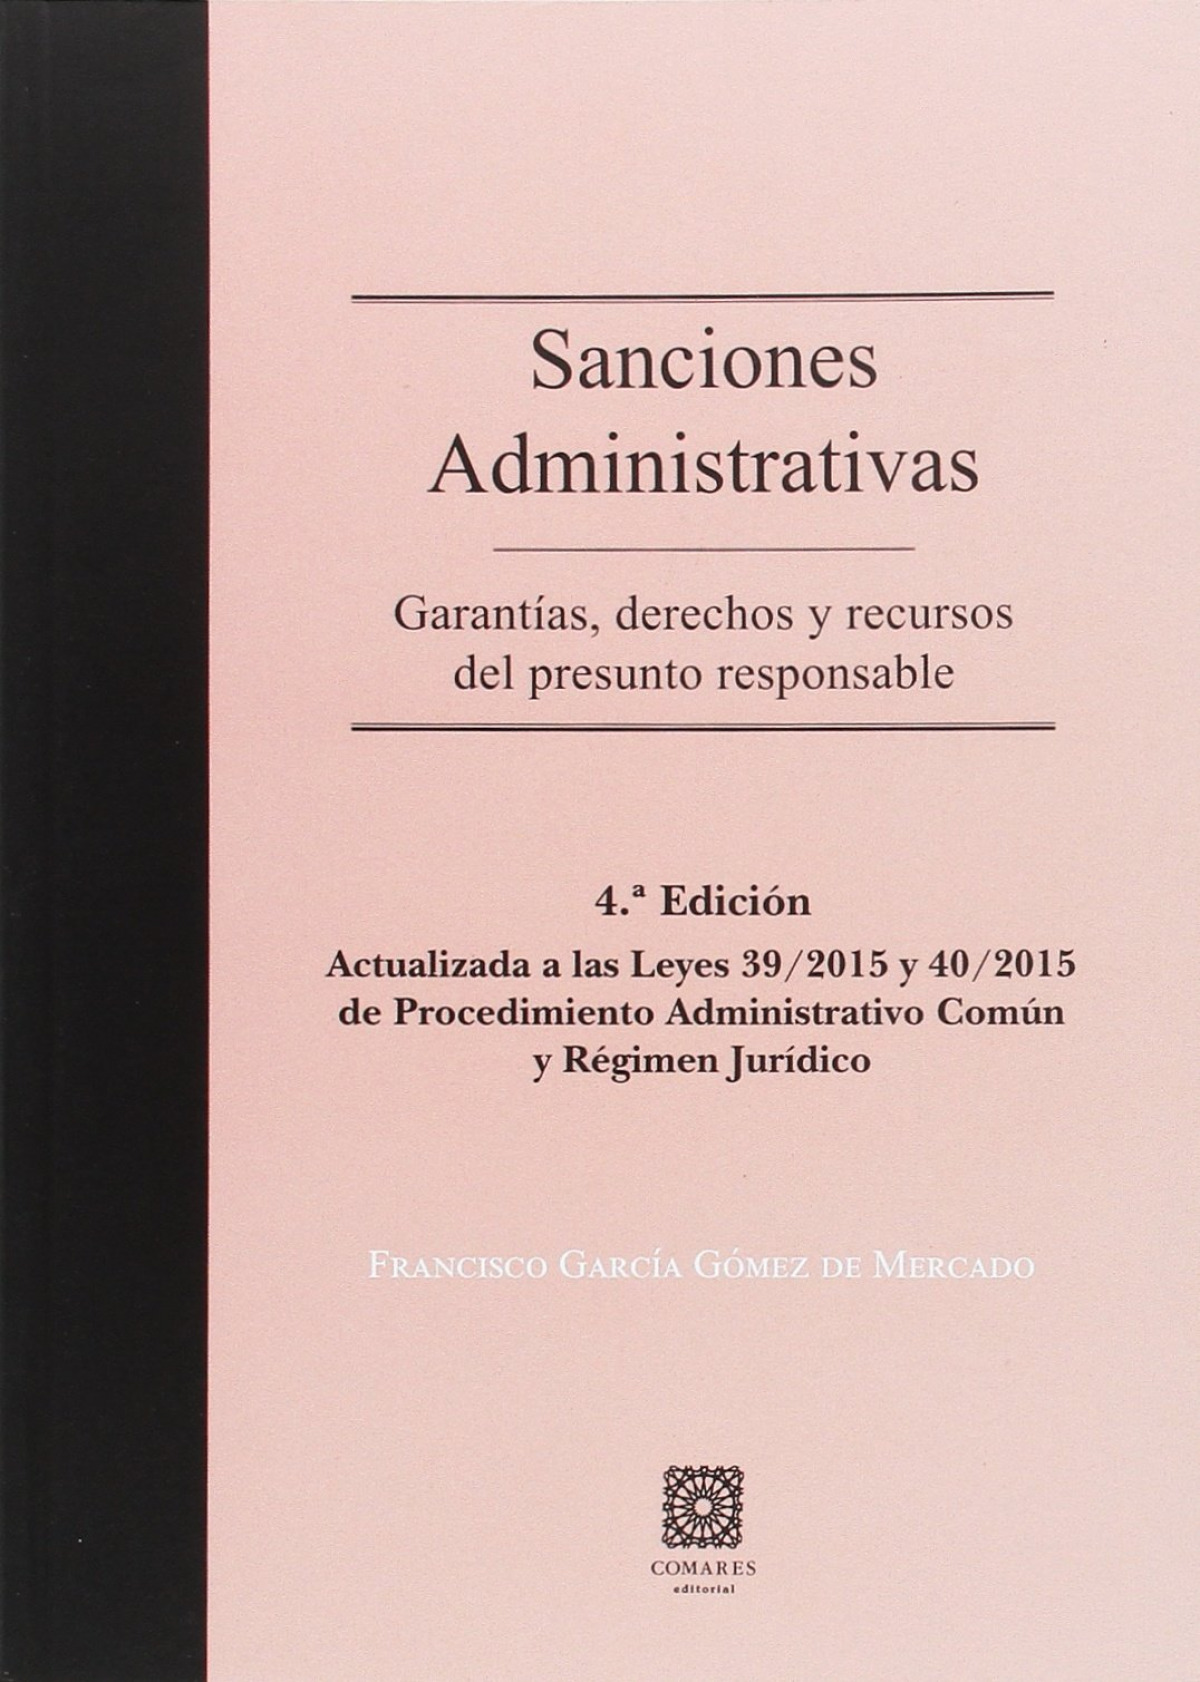 Sanciones administrativas: garantías, derechos y recursos del presunto responsable